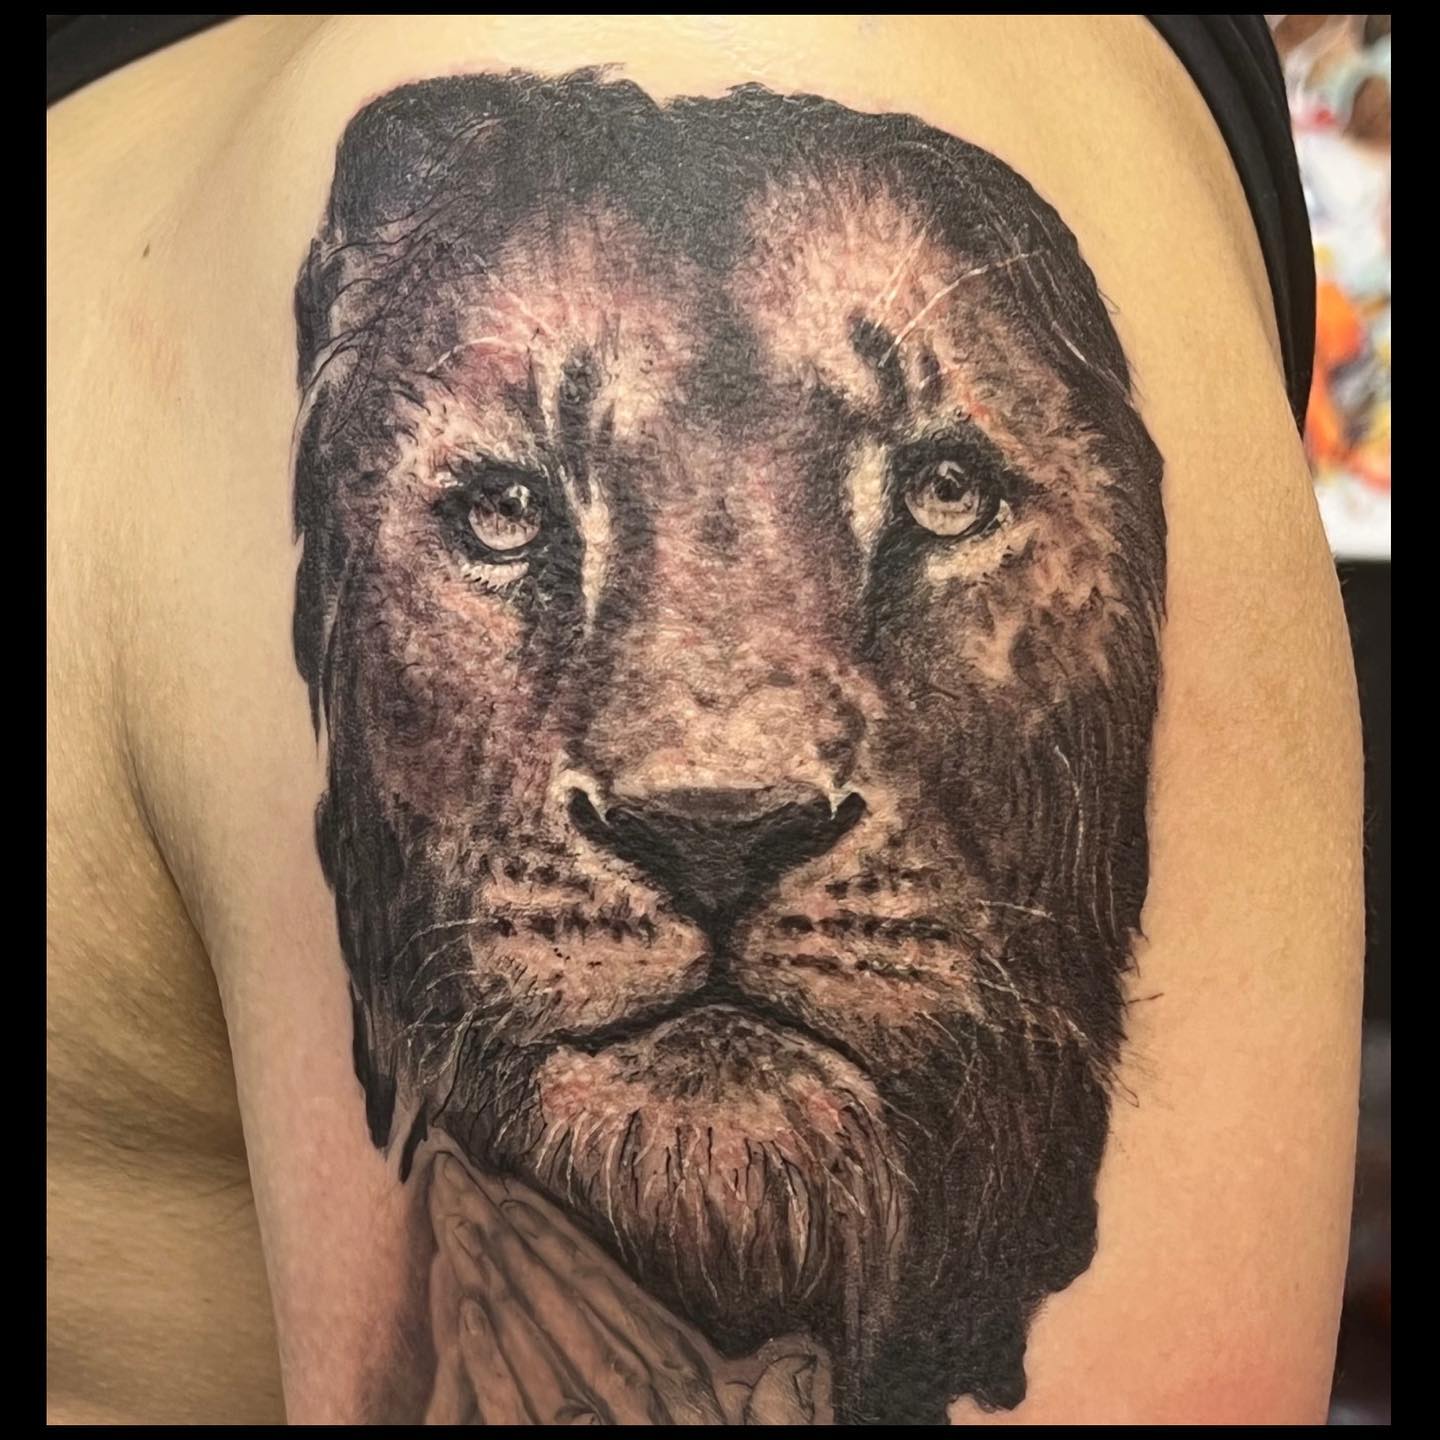 腕 #ライオン#lion #tattoo #ink #freehand #blackandgray #horimasa #tokyo #tokyoink #56 #56tattoo #刺青 #墨 #彫雅 #東京 #東京インク #タトゥー #フリーハンド #ブラックアンドグレー